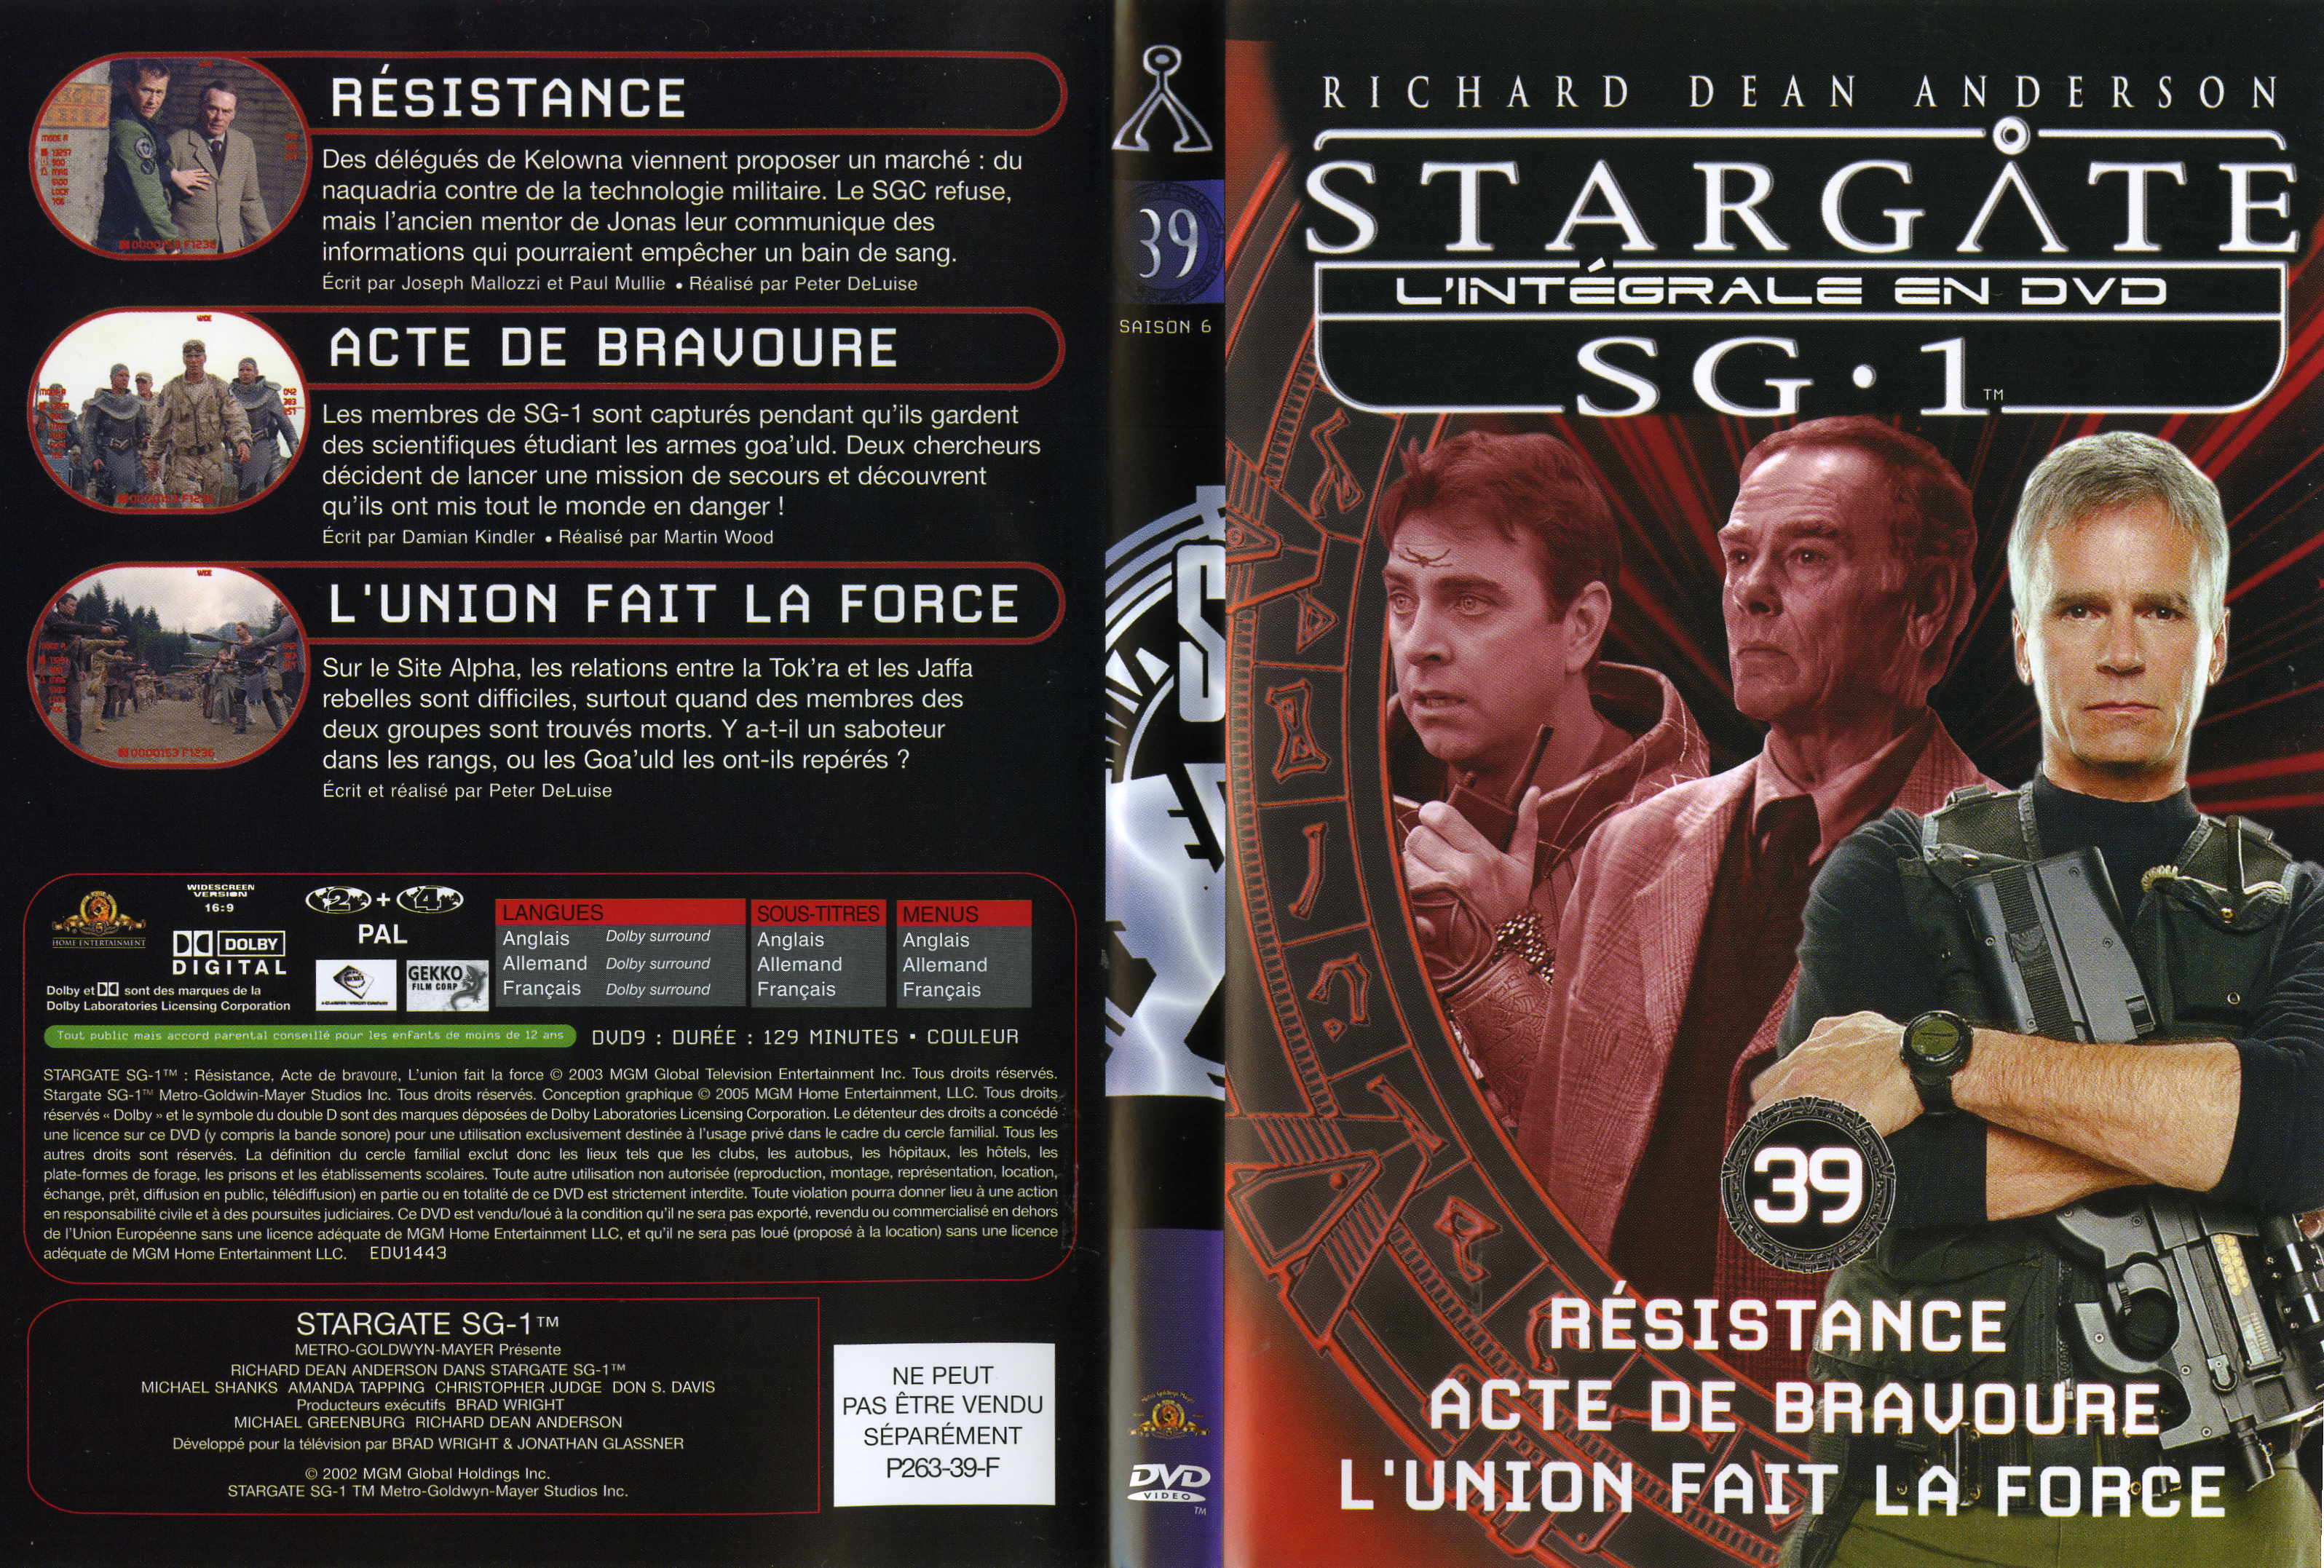 Jaquette DVD Stargate saison 6 vol 39